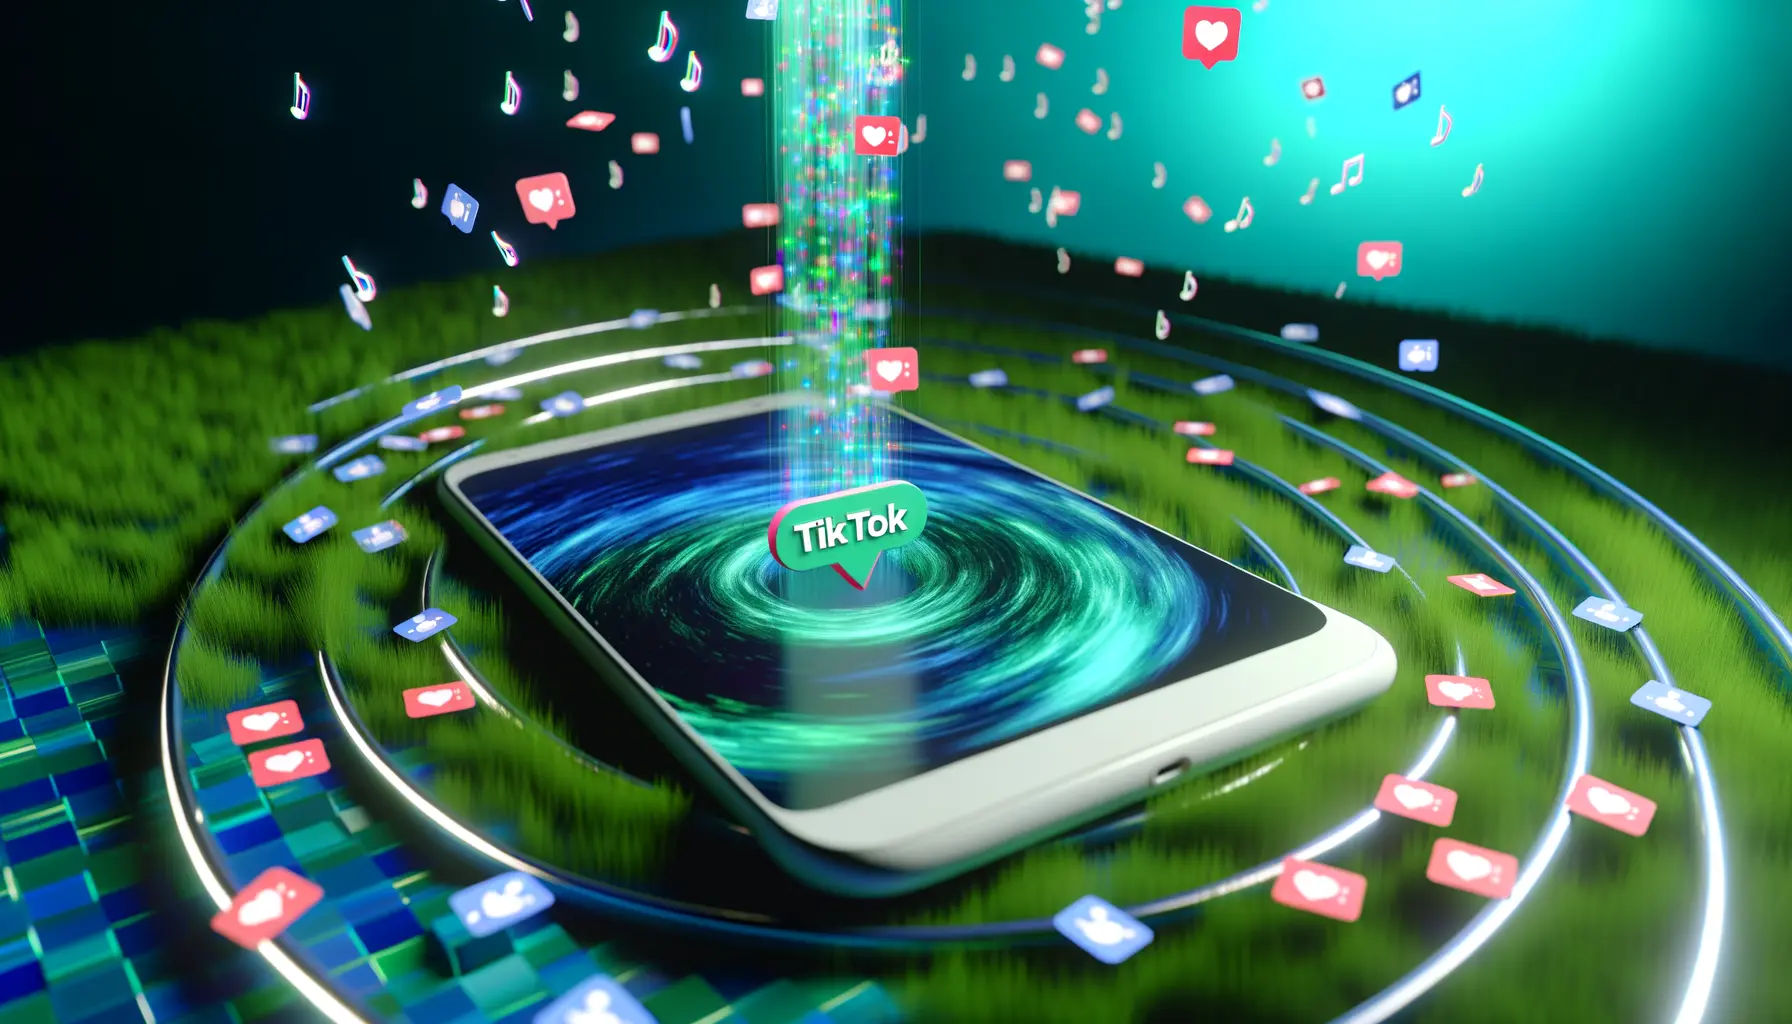 Kreativ visualisierte Smartphone-Anzeige auf TikTok